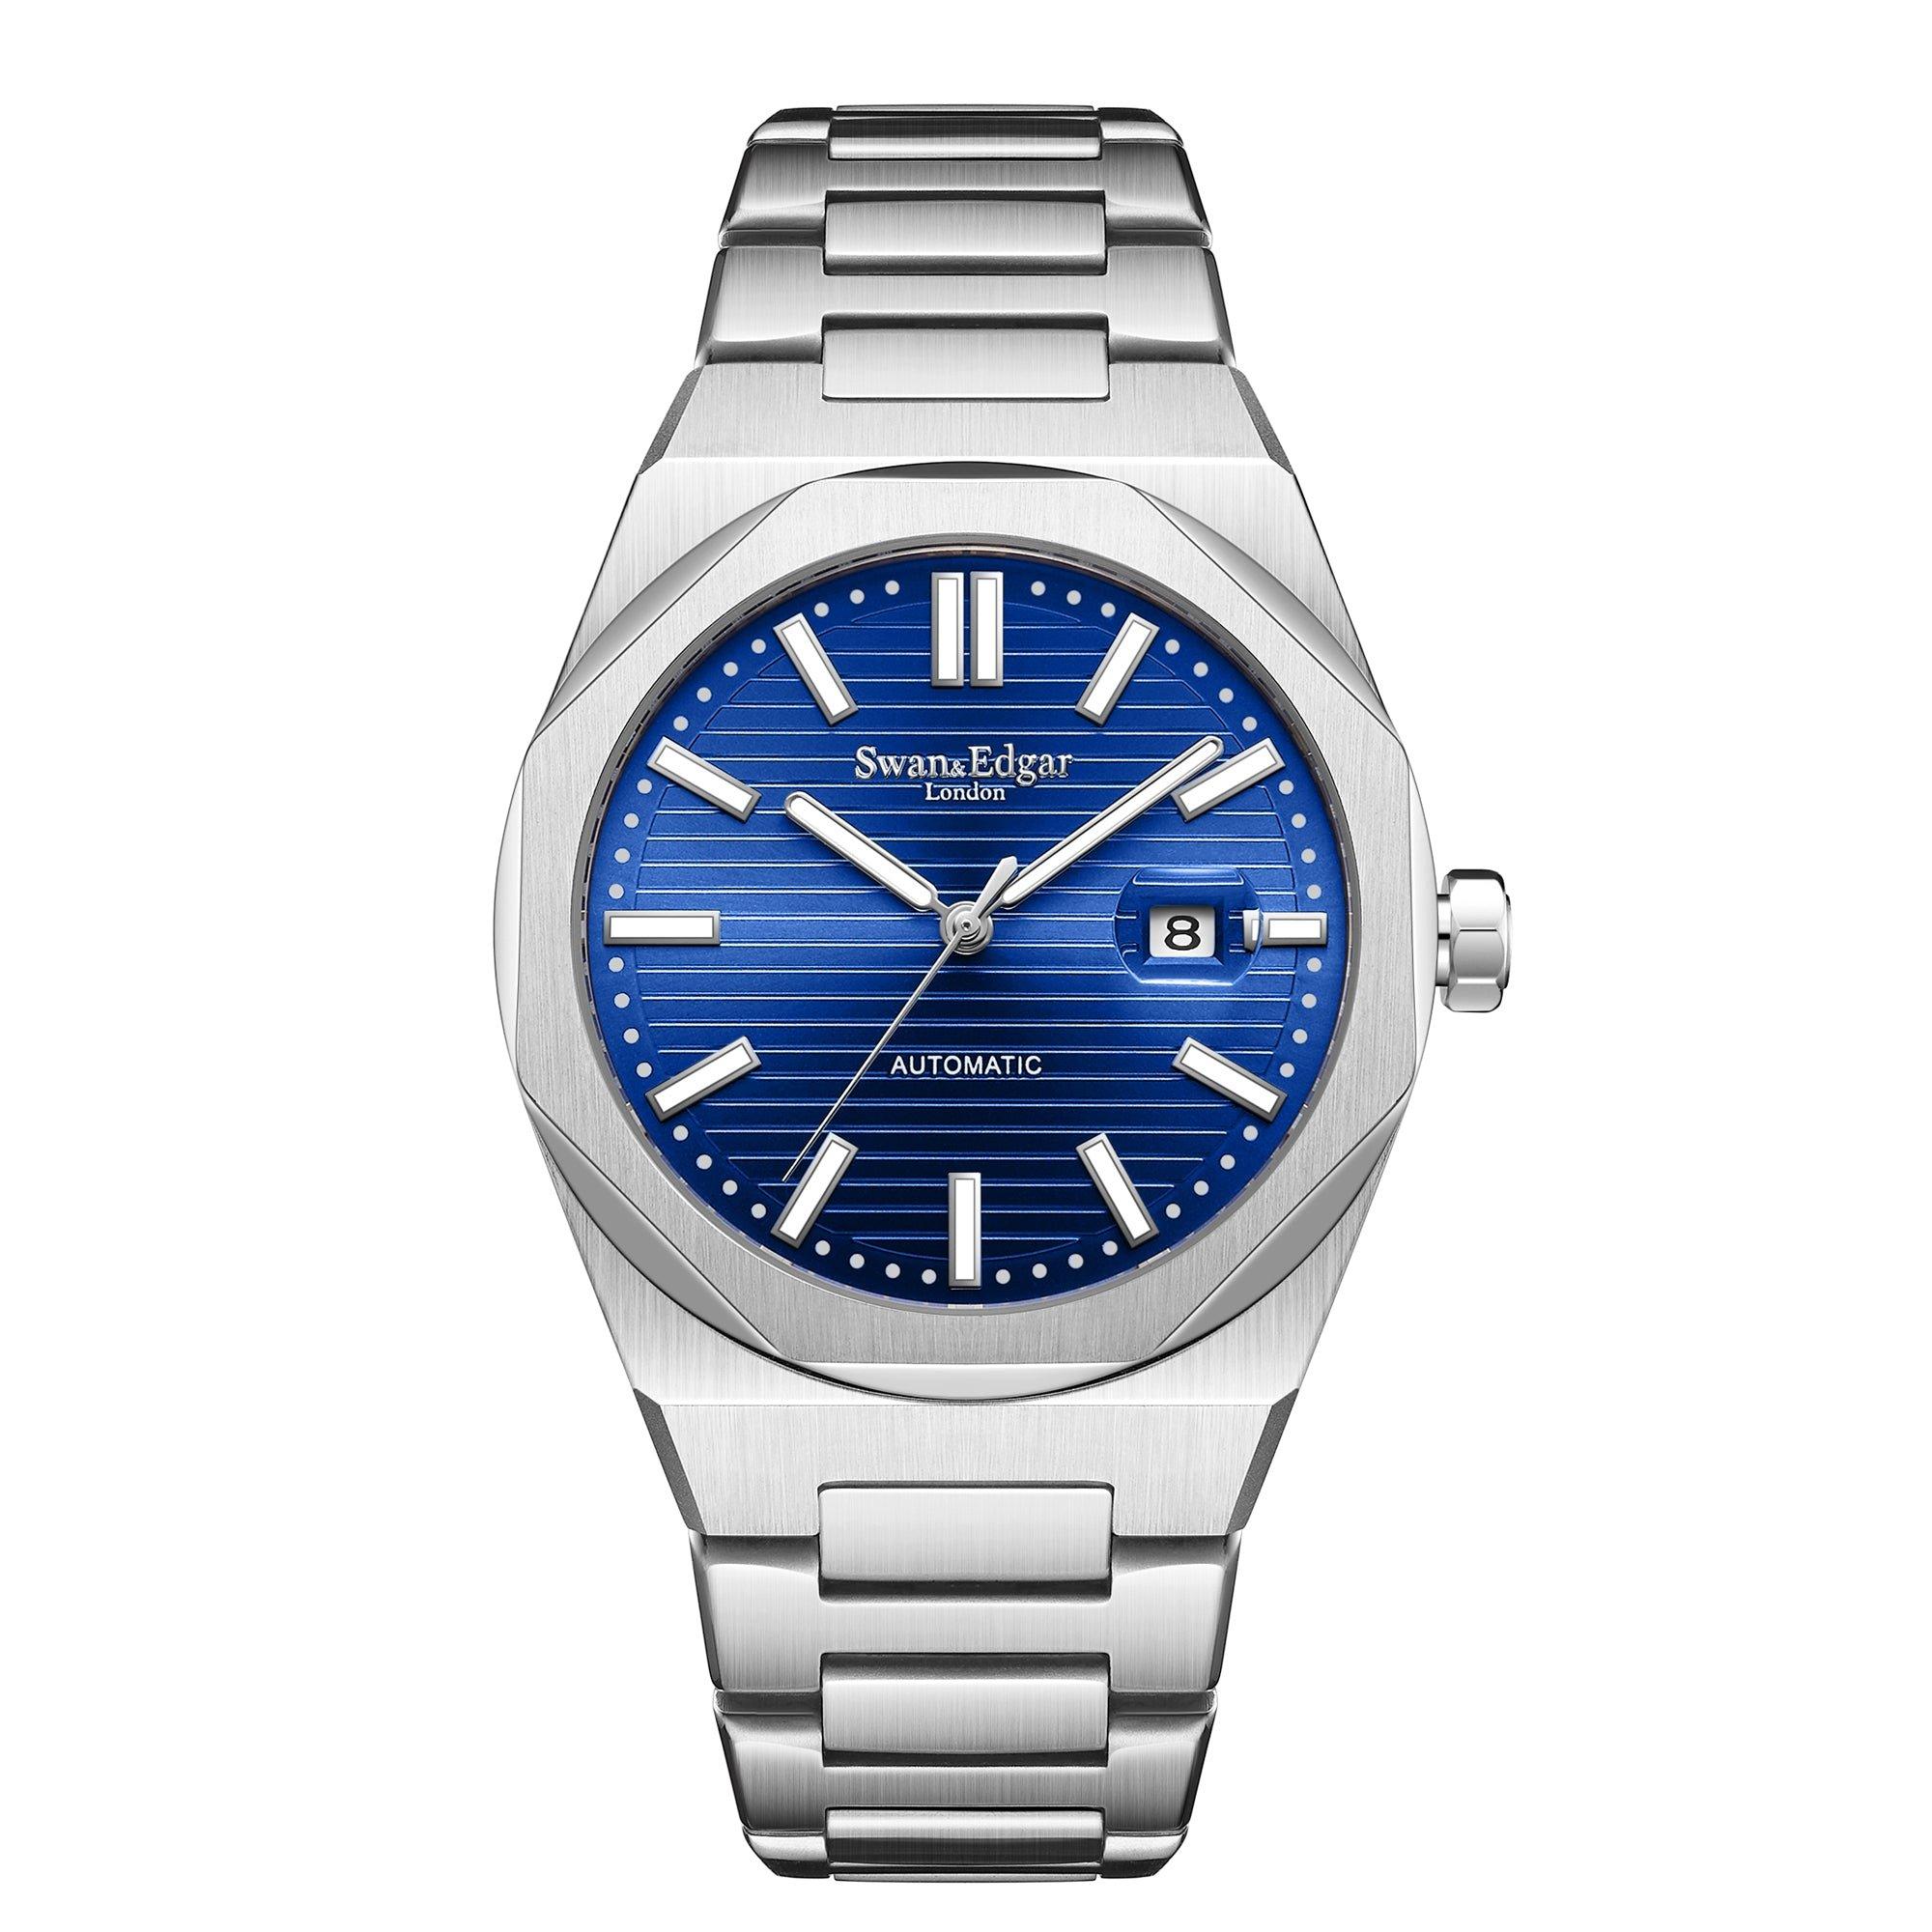 Автоматические часы Sovereine ручной сборки Swan & Edgar ограниченной серии, синий мужские часы rhythm automatic a1104l01